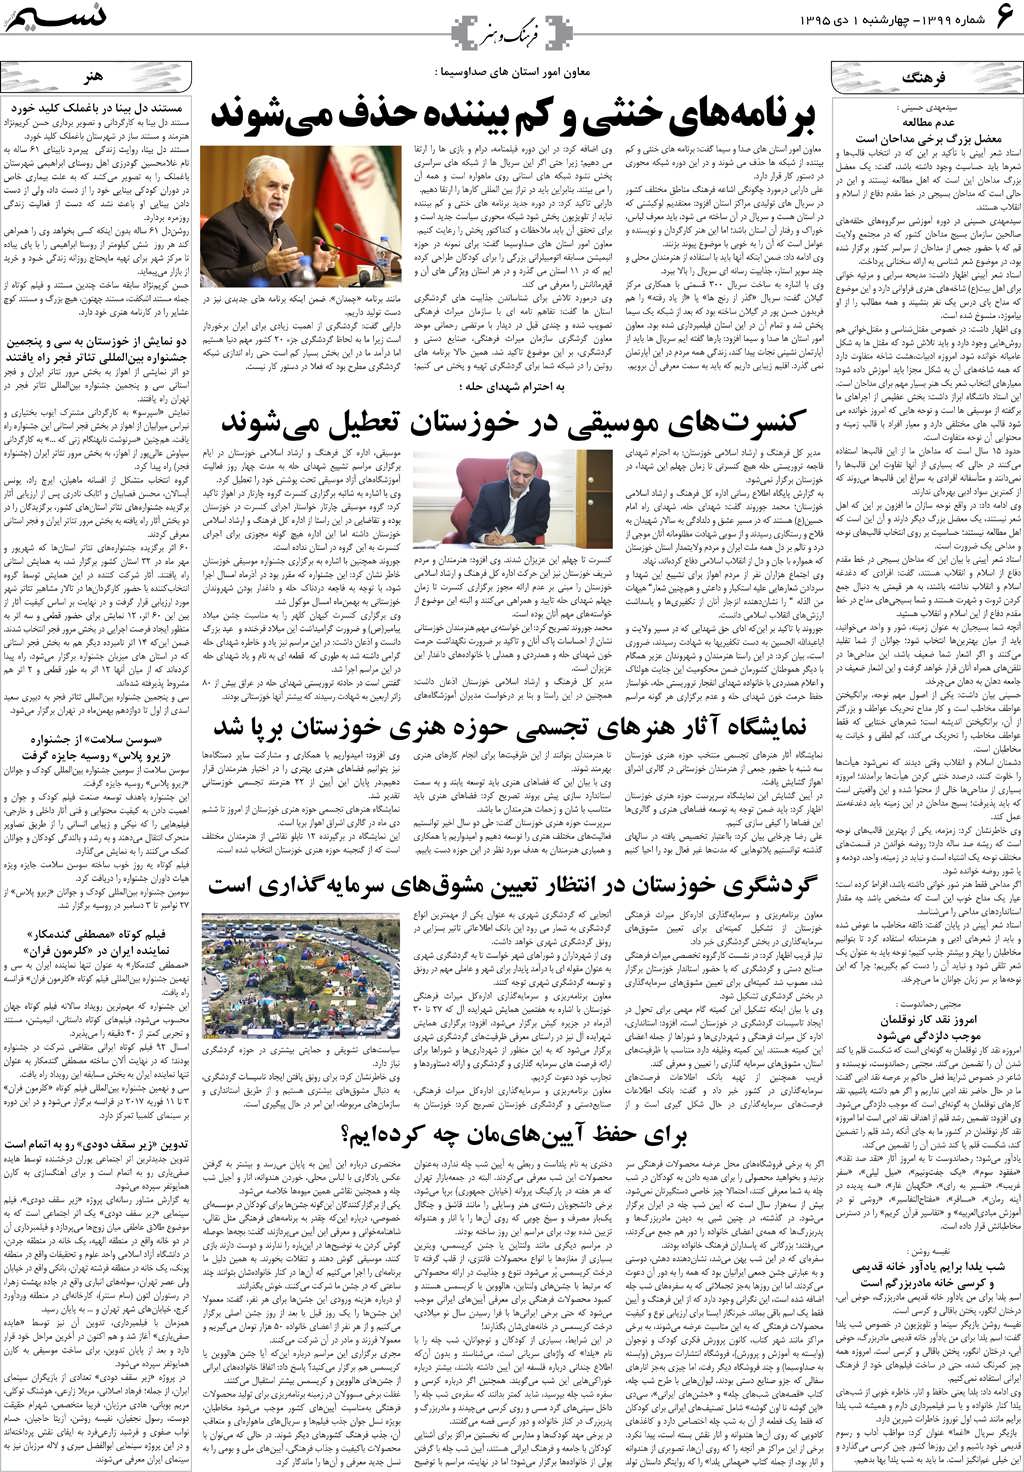 صفحه فرهنگ و هنر روزنامه نسیم شماره 1399